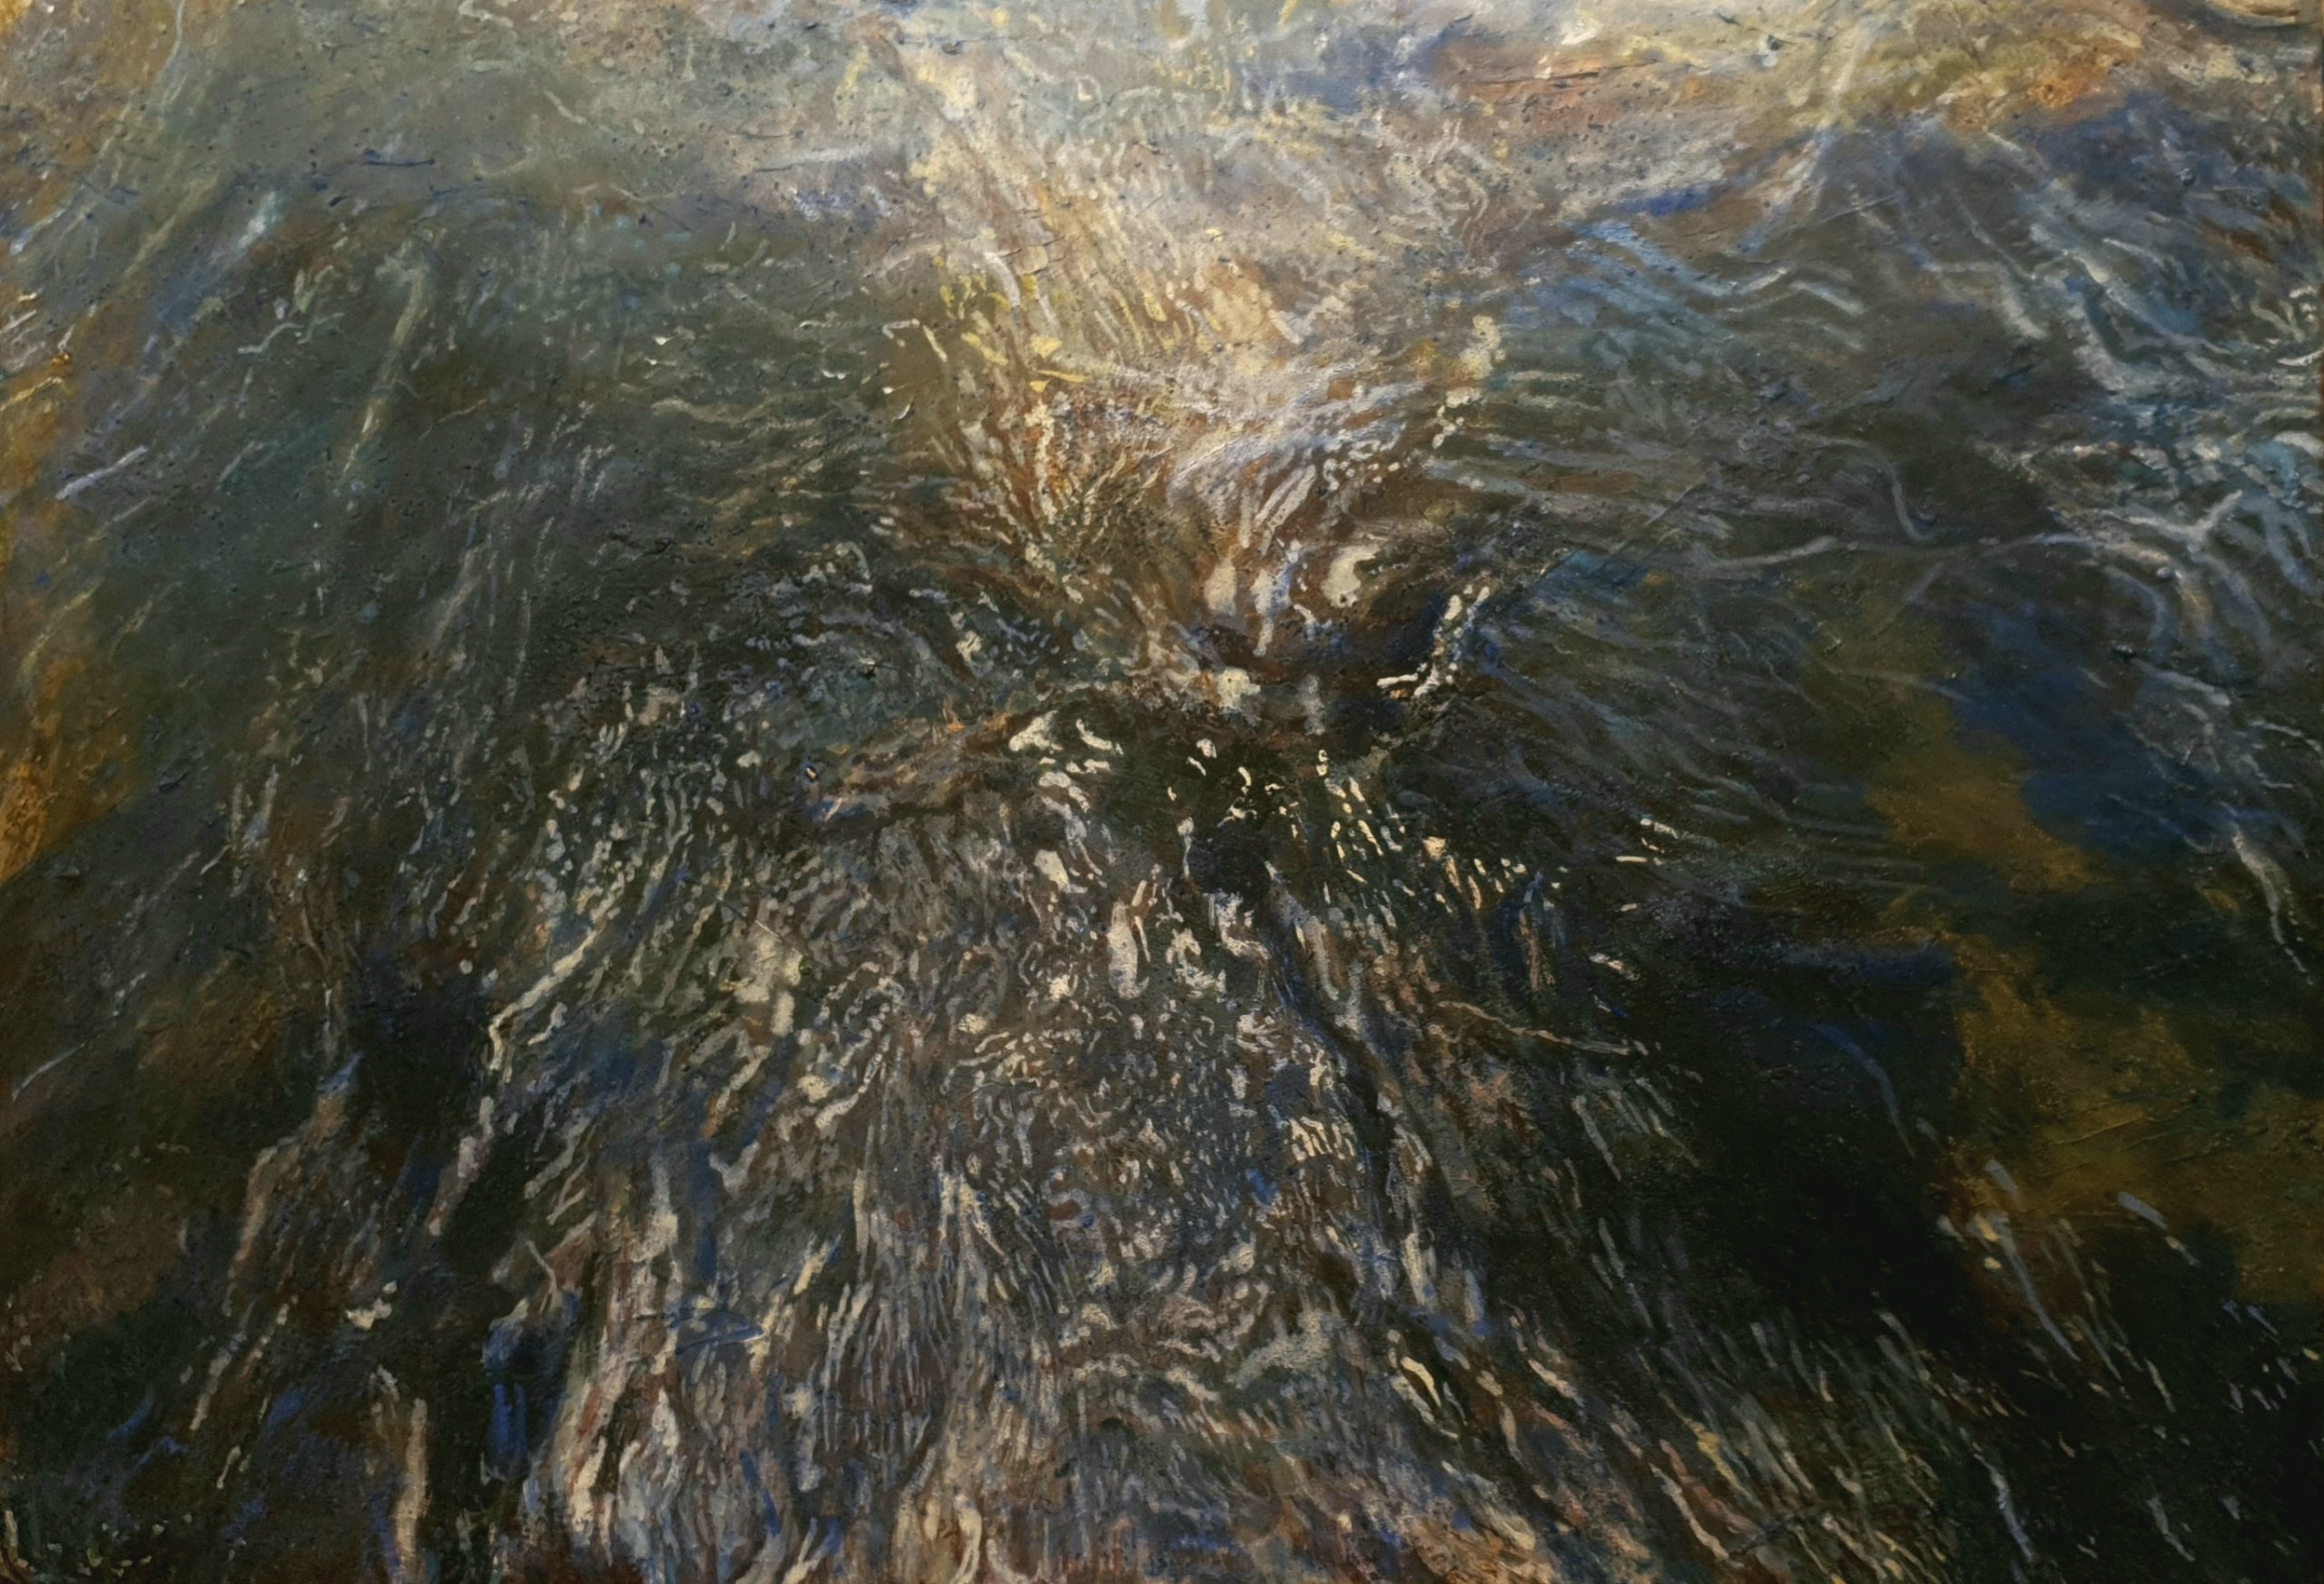 Fleuve - River, 2013, 70x100cm